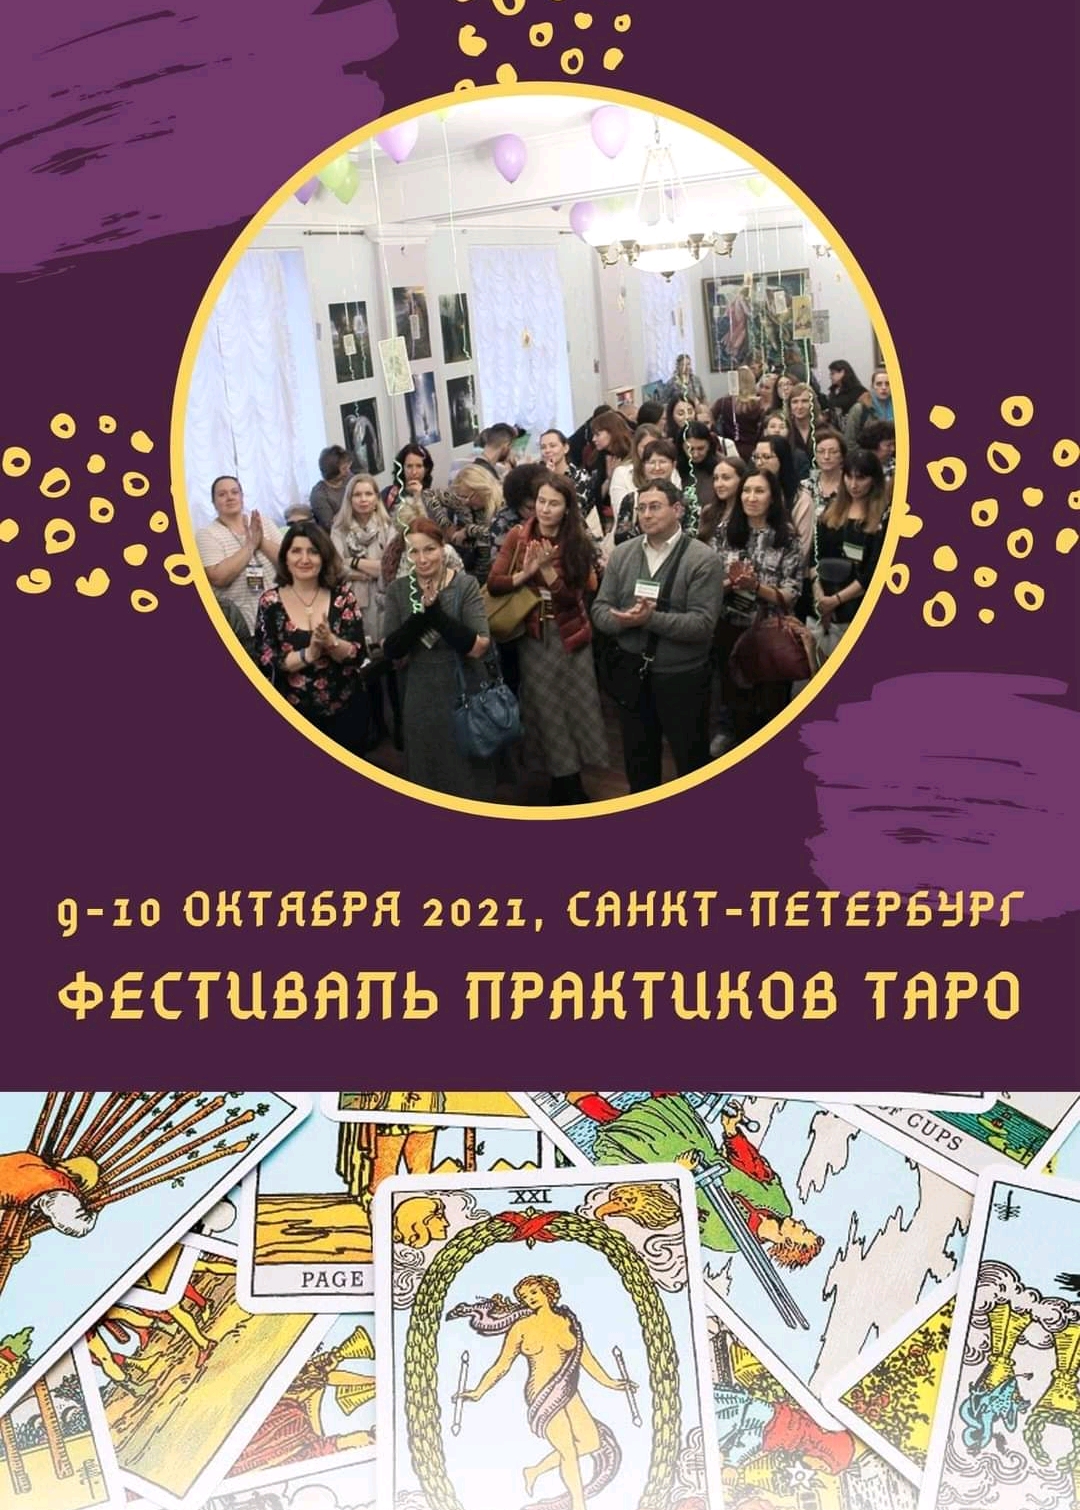 Моё выступление на Таро Фест Санкт-Петербург 9-10.10/21